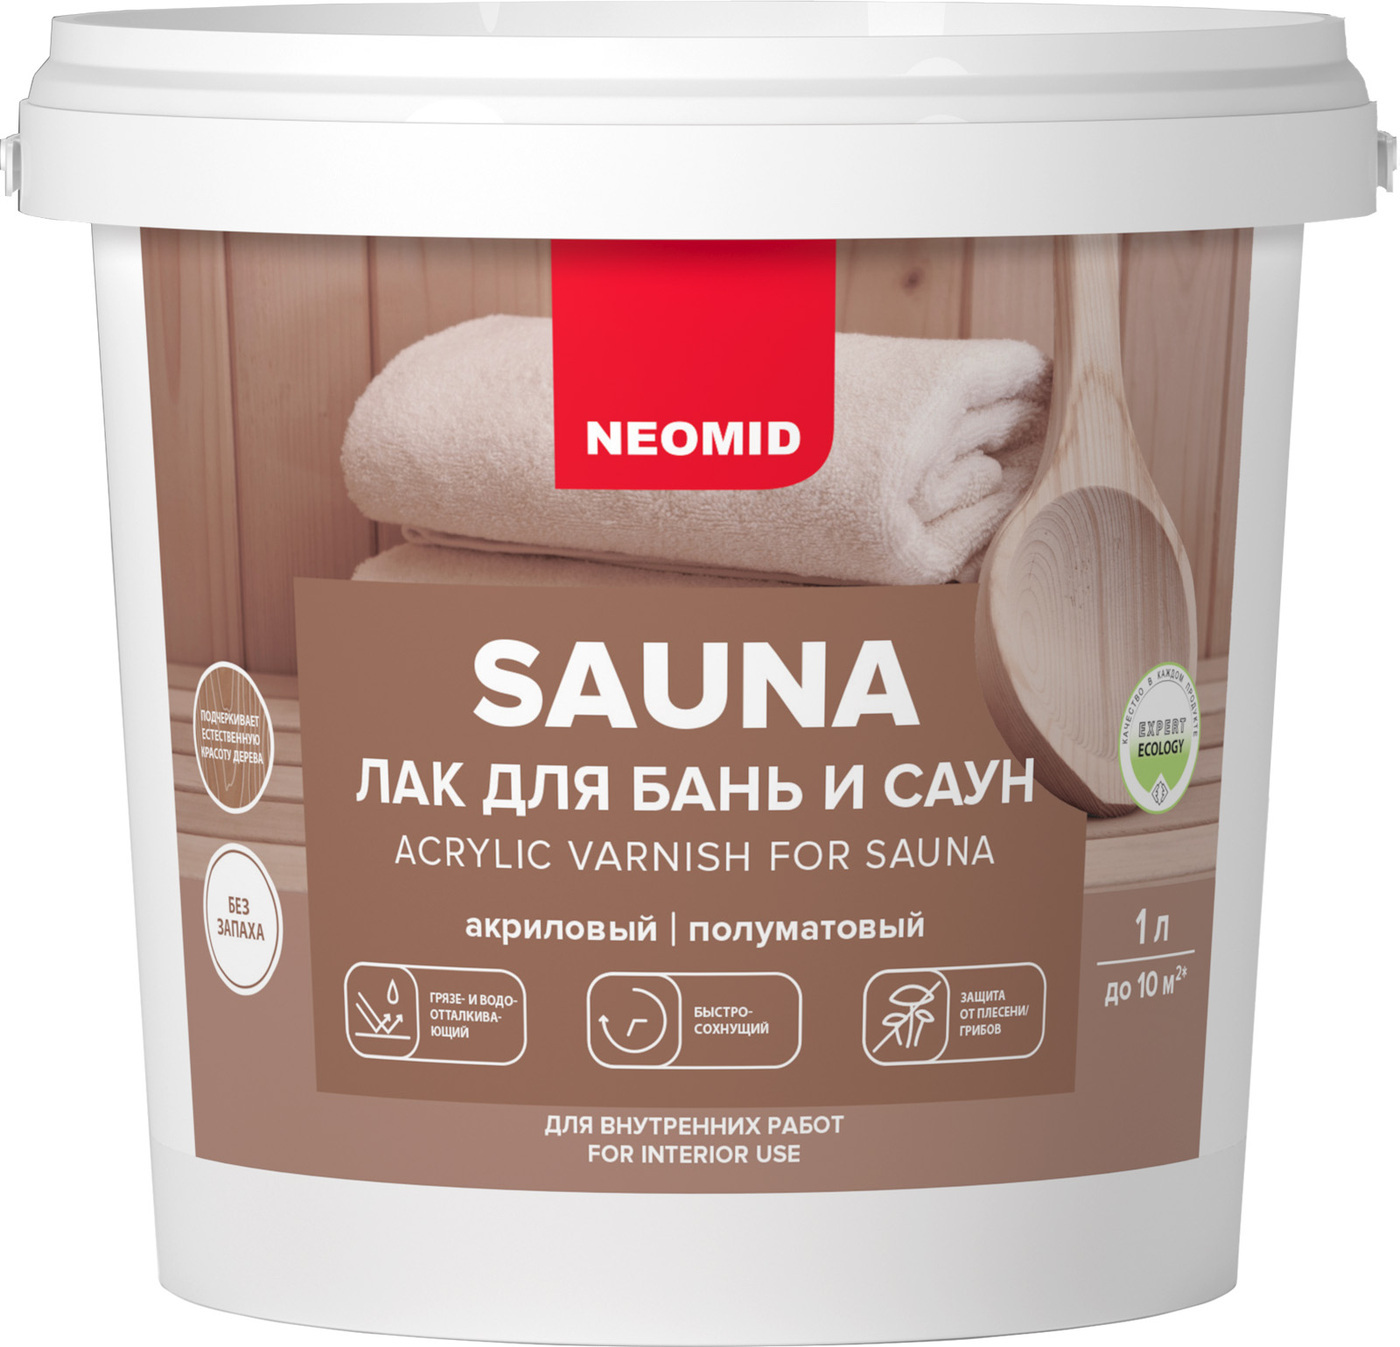 Лак акриловый для бань и саун «Neomid Sauna» (1 л, 12 штук в упаковке)